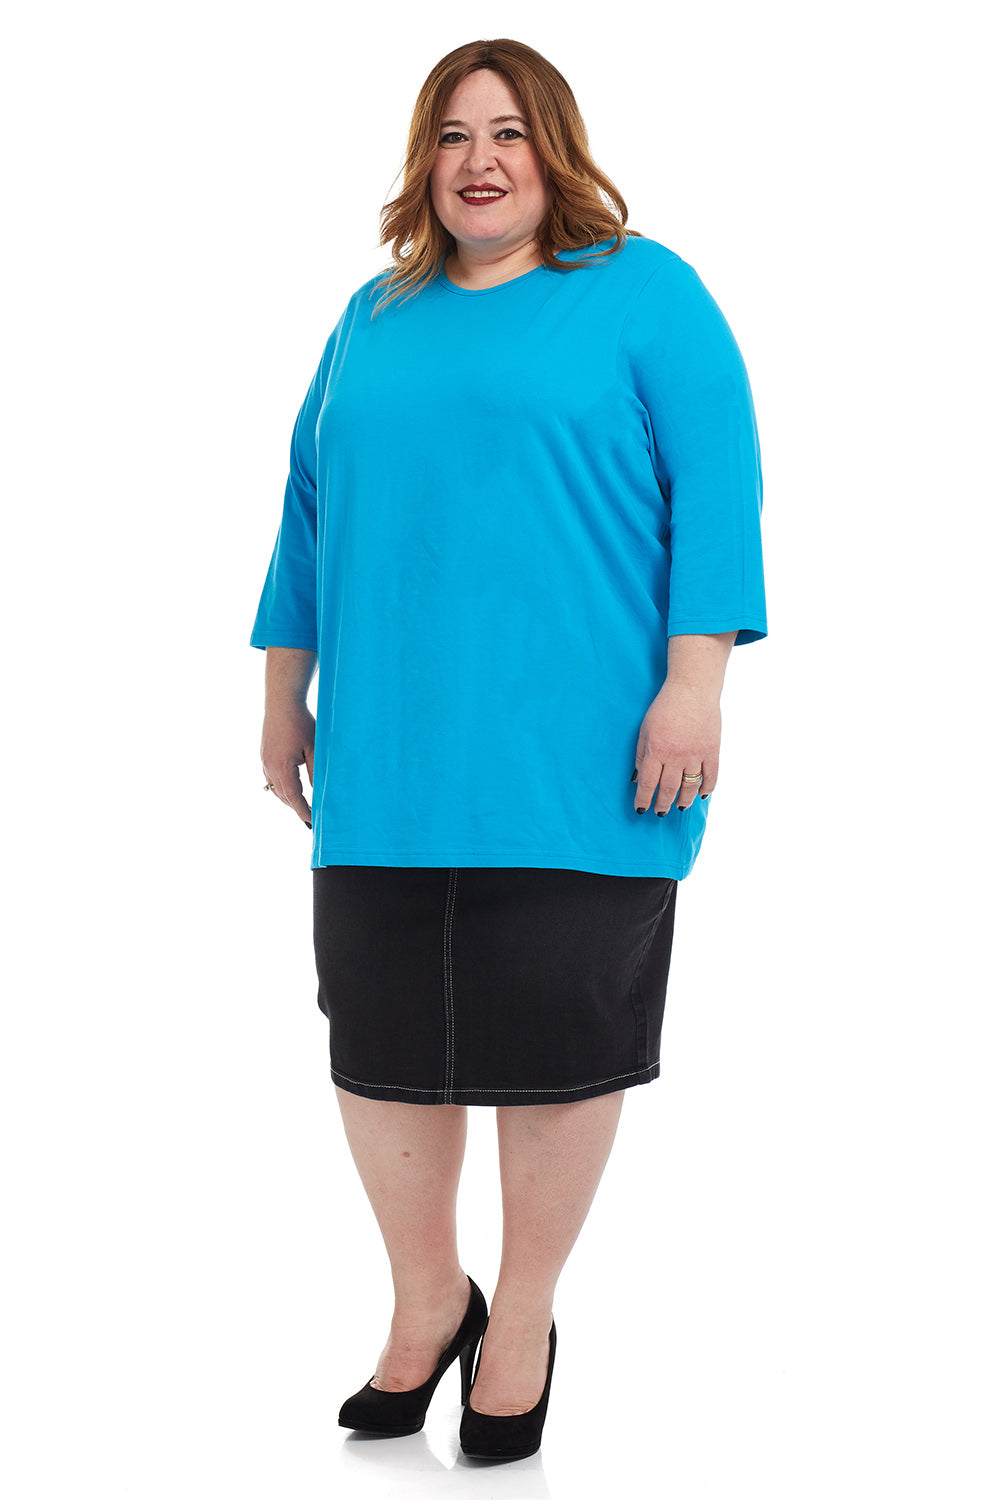 Esteez ¾ Sleeve Cotton Spandex Loose Fit Shirt for WOMEN - OCEAN BLUE